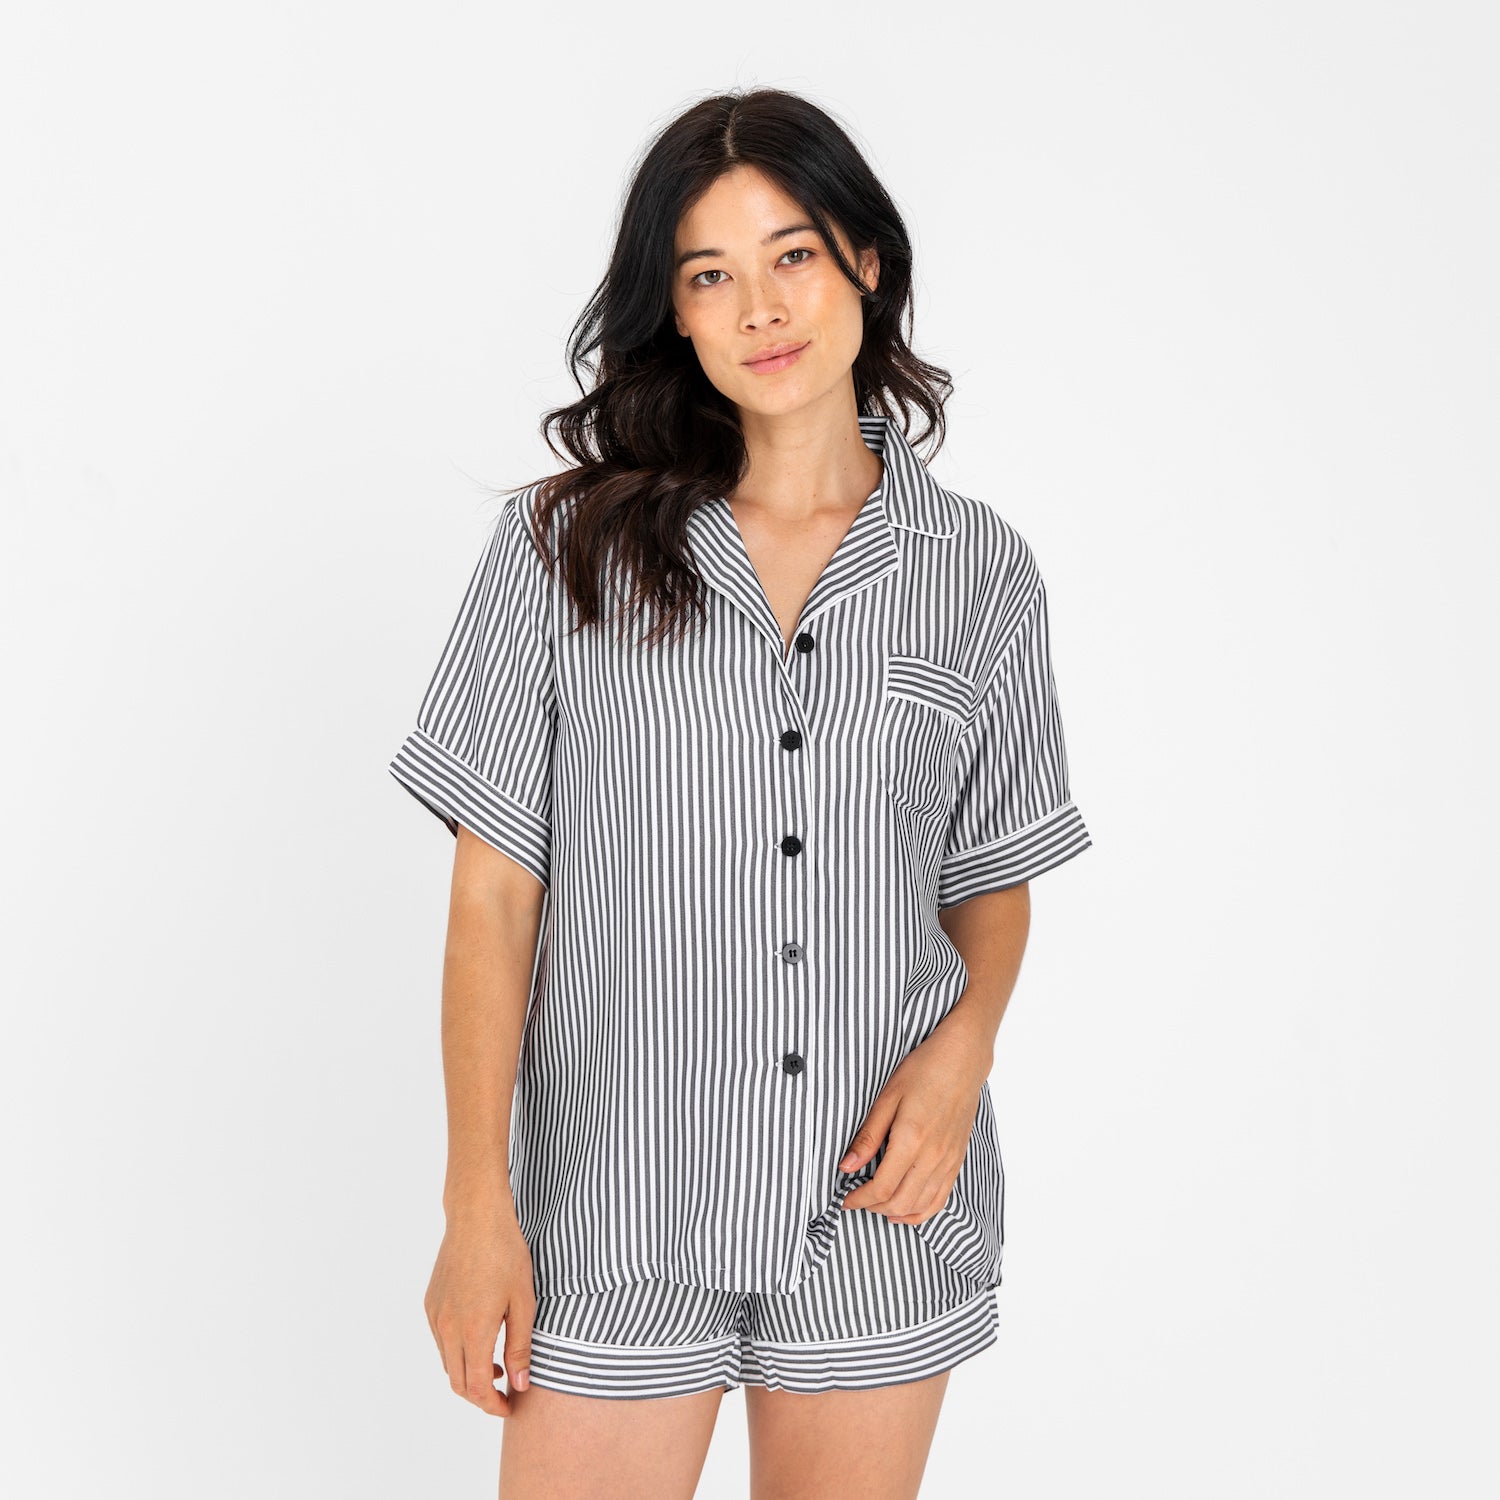 Slate Stripes | Short Sleeve PJ Shirt Made With Bamboo #Color_slatestripes